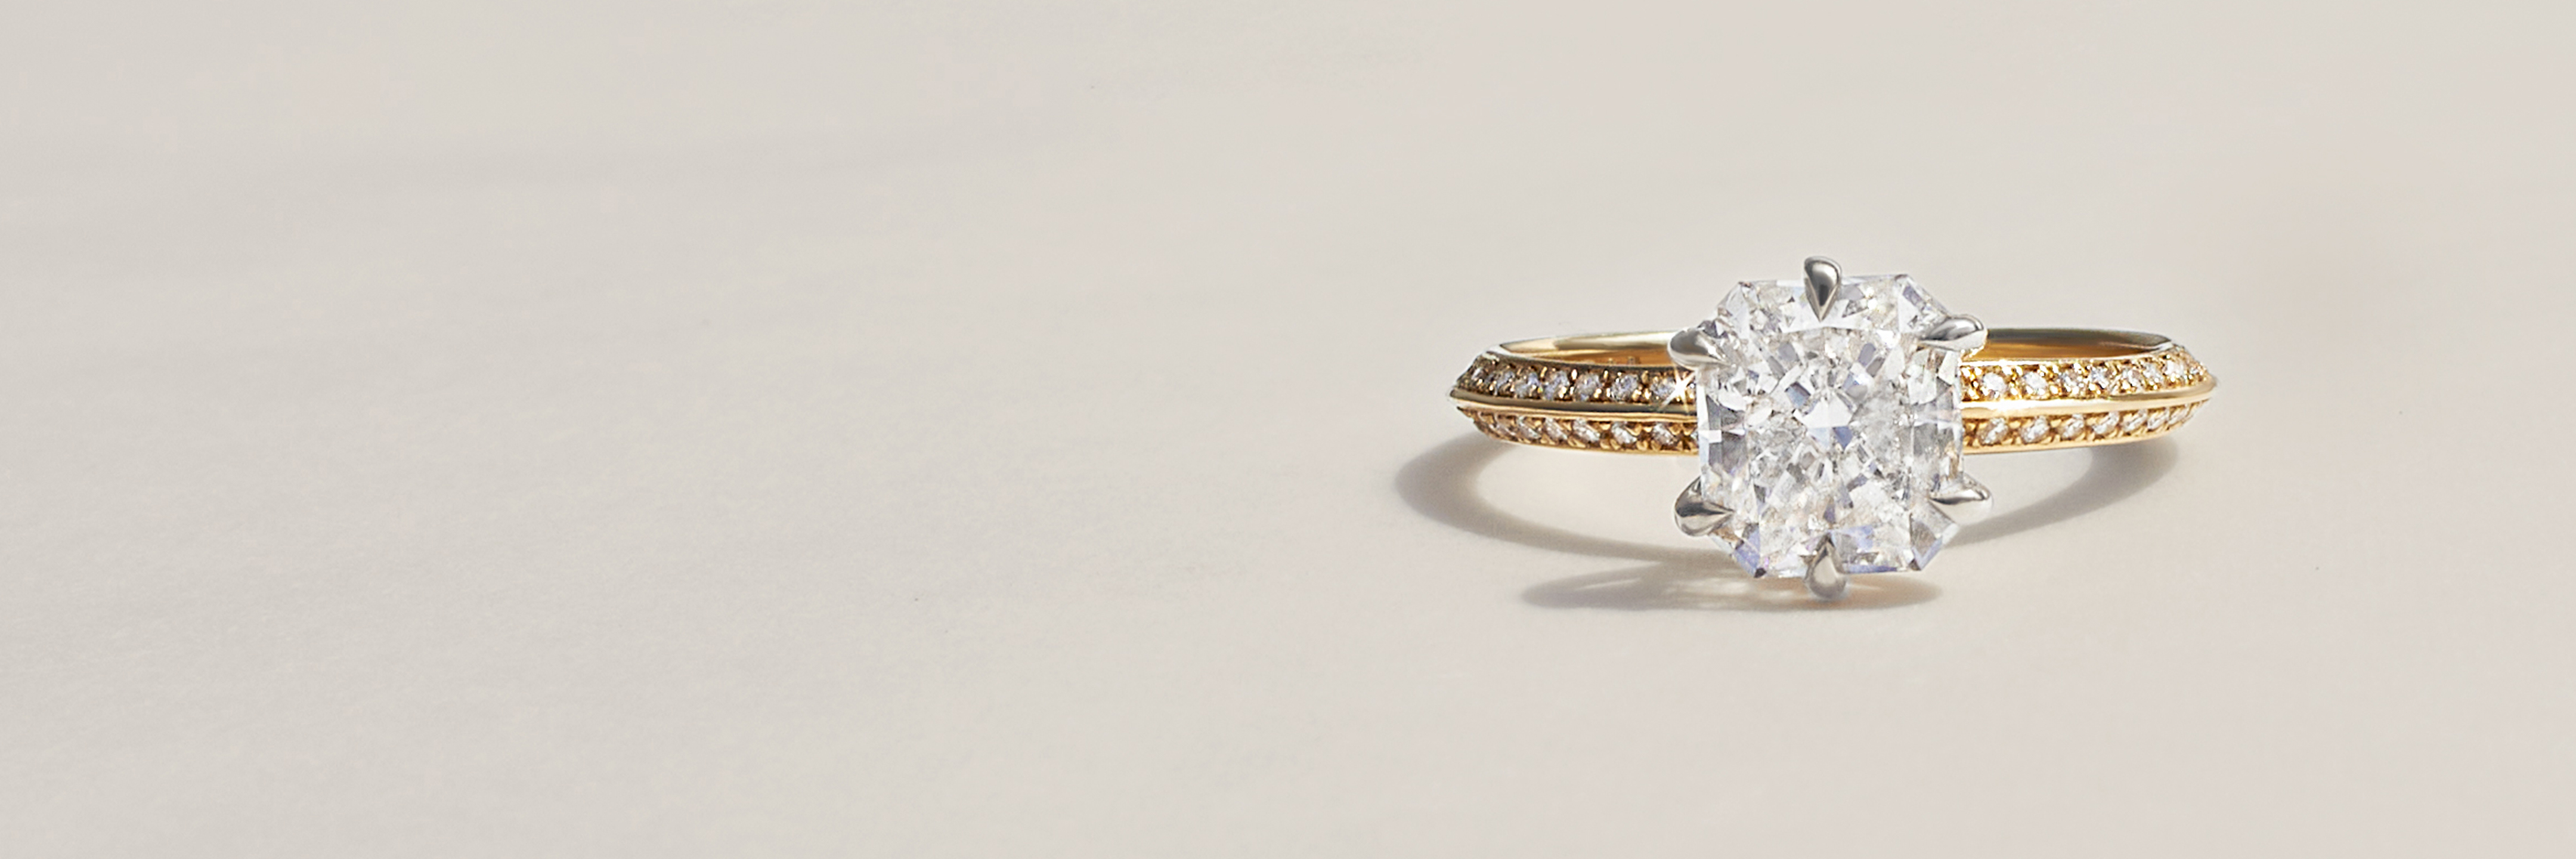 Handmade Jewelry | Toronto Engagement Rings | Anouk Jewelry